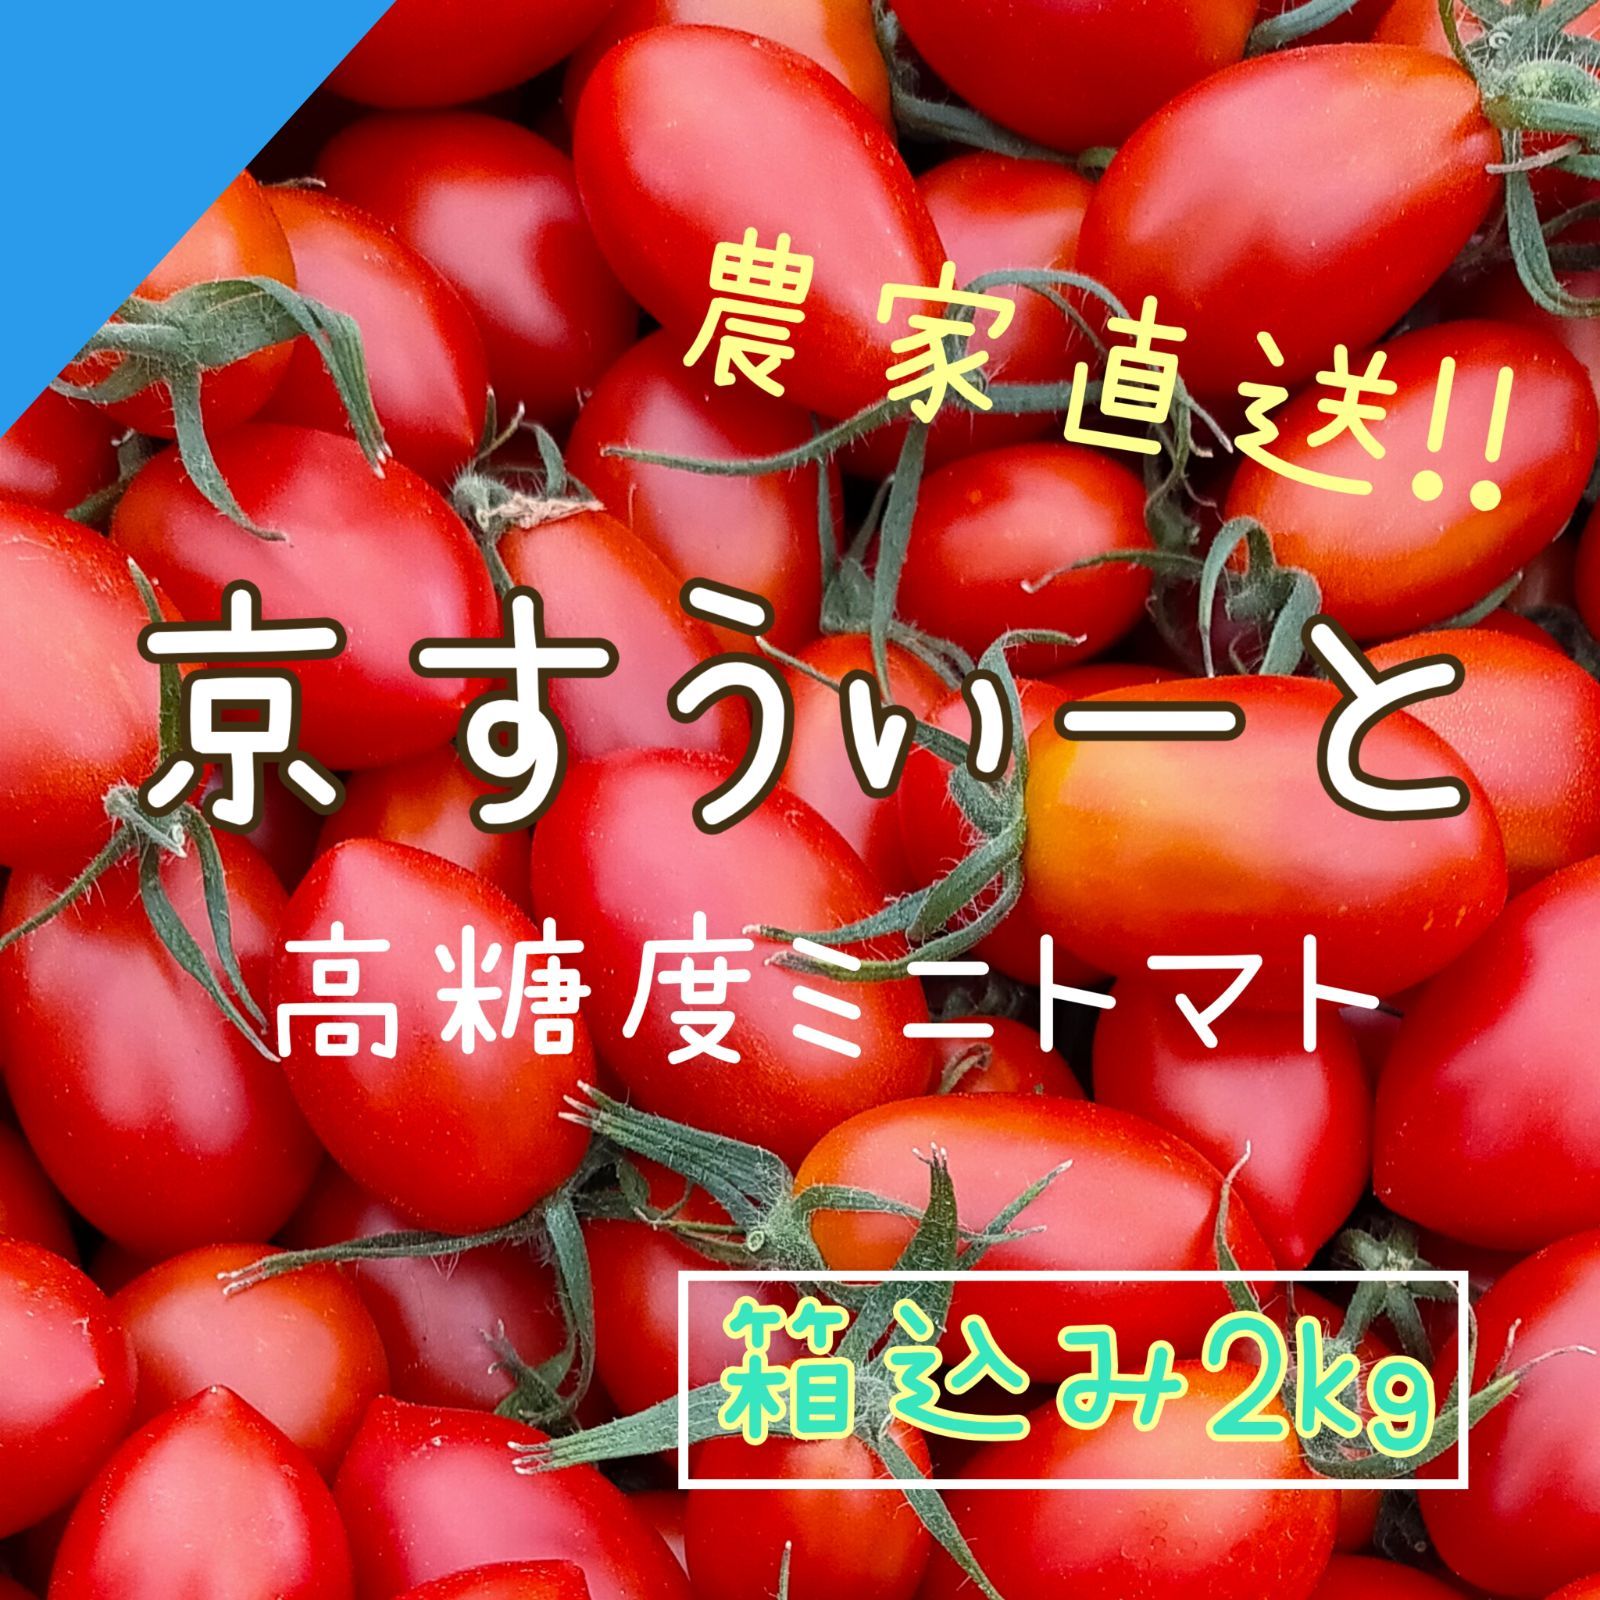 【京すうぃーと2kg】京都産 高糖度 フルーツミニトマト 箱込み2㎏-0